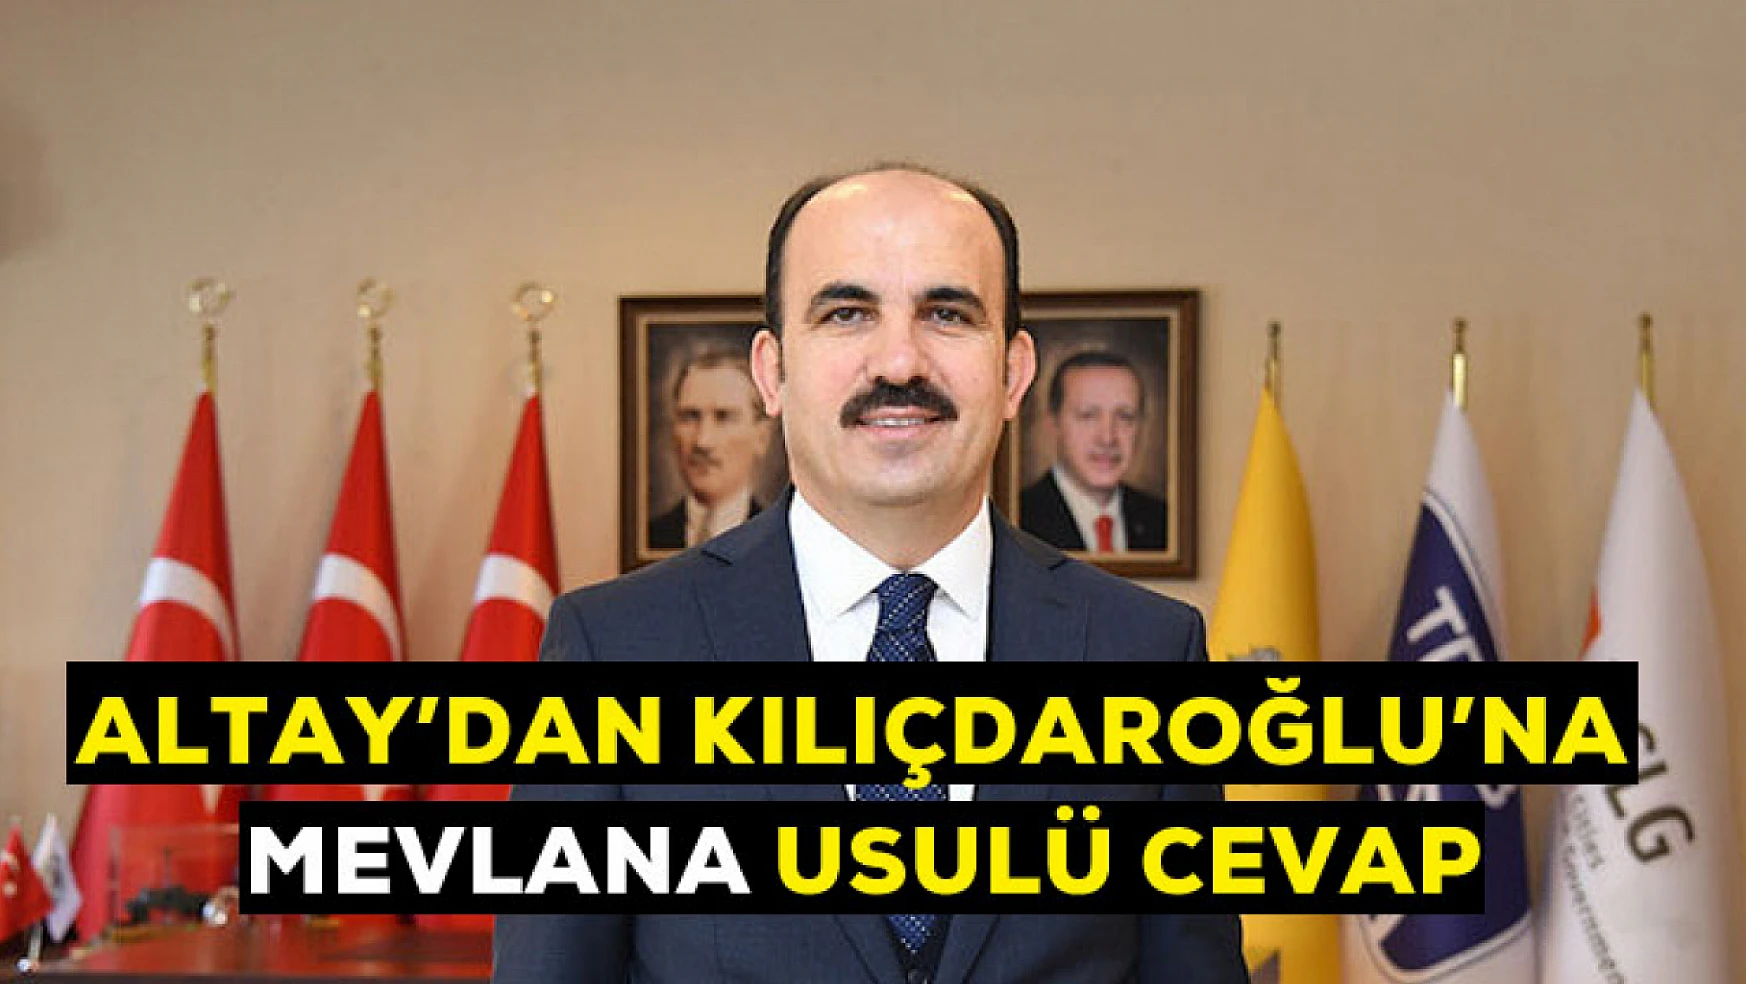 Altay'dan Kılıçdaroğlu'na Mevlana usulü cevap